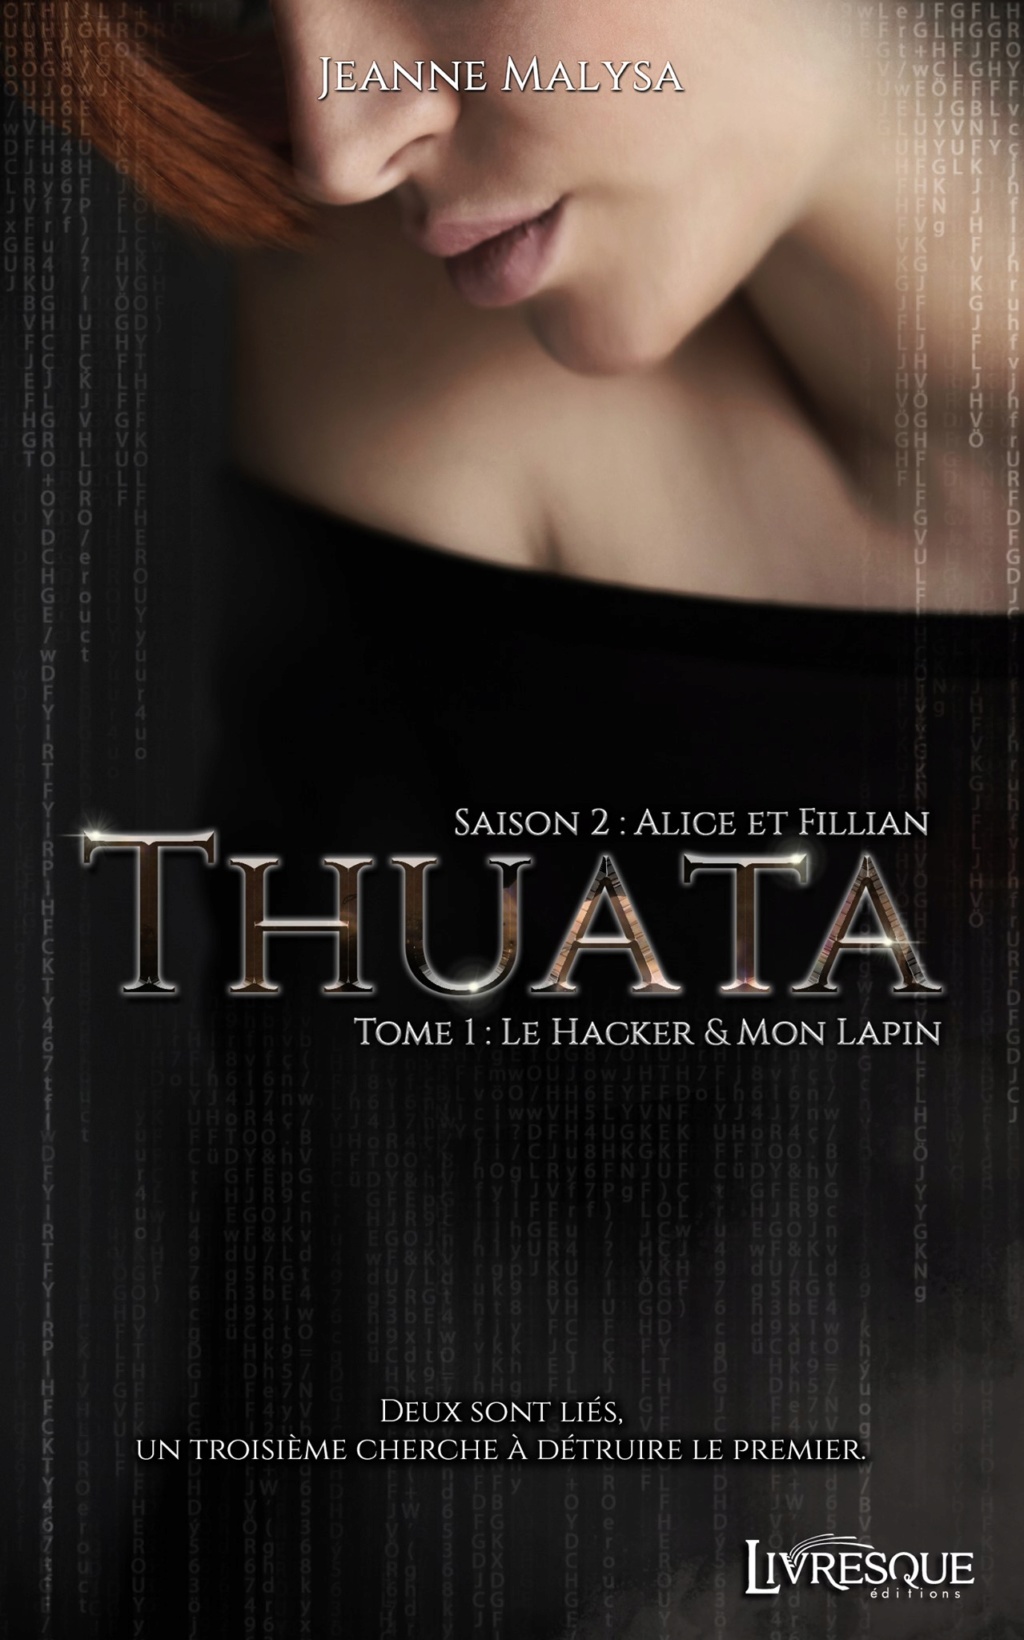 Thuata- Saison 2 : Alice et Fillian - Tome 1 : Le hacker & Mon Lapin de Jeanne Malysa 0_s2t111